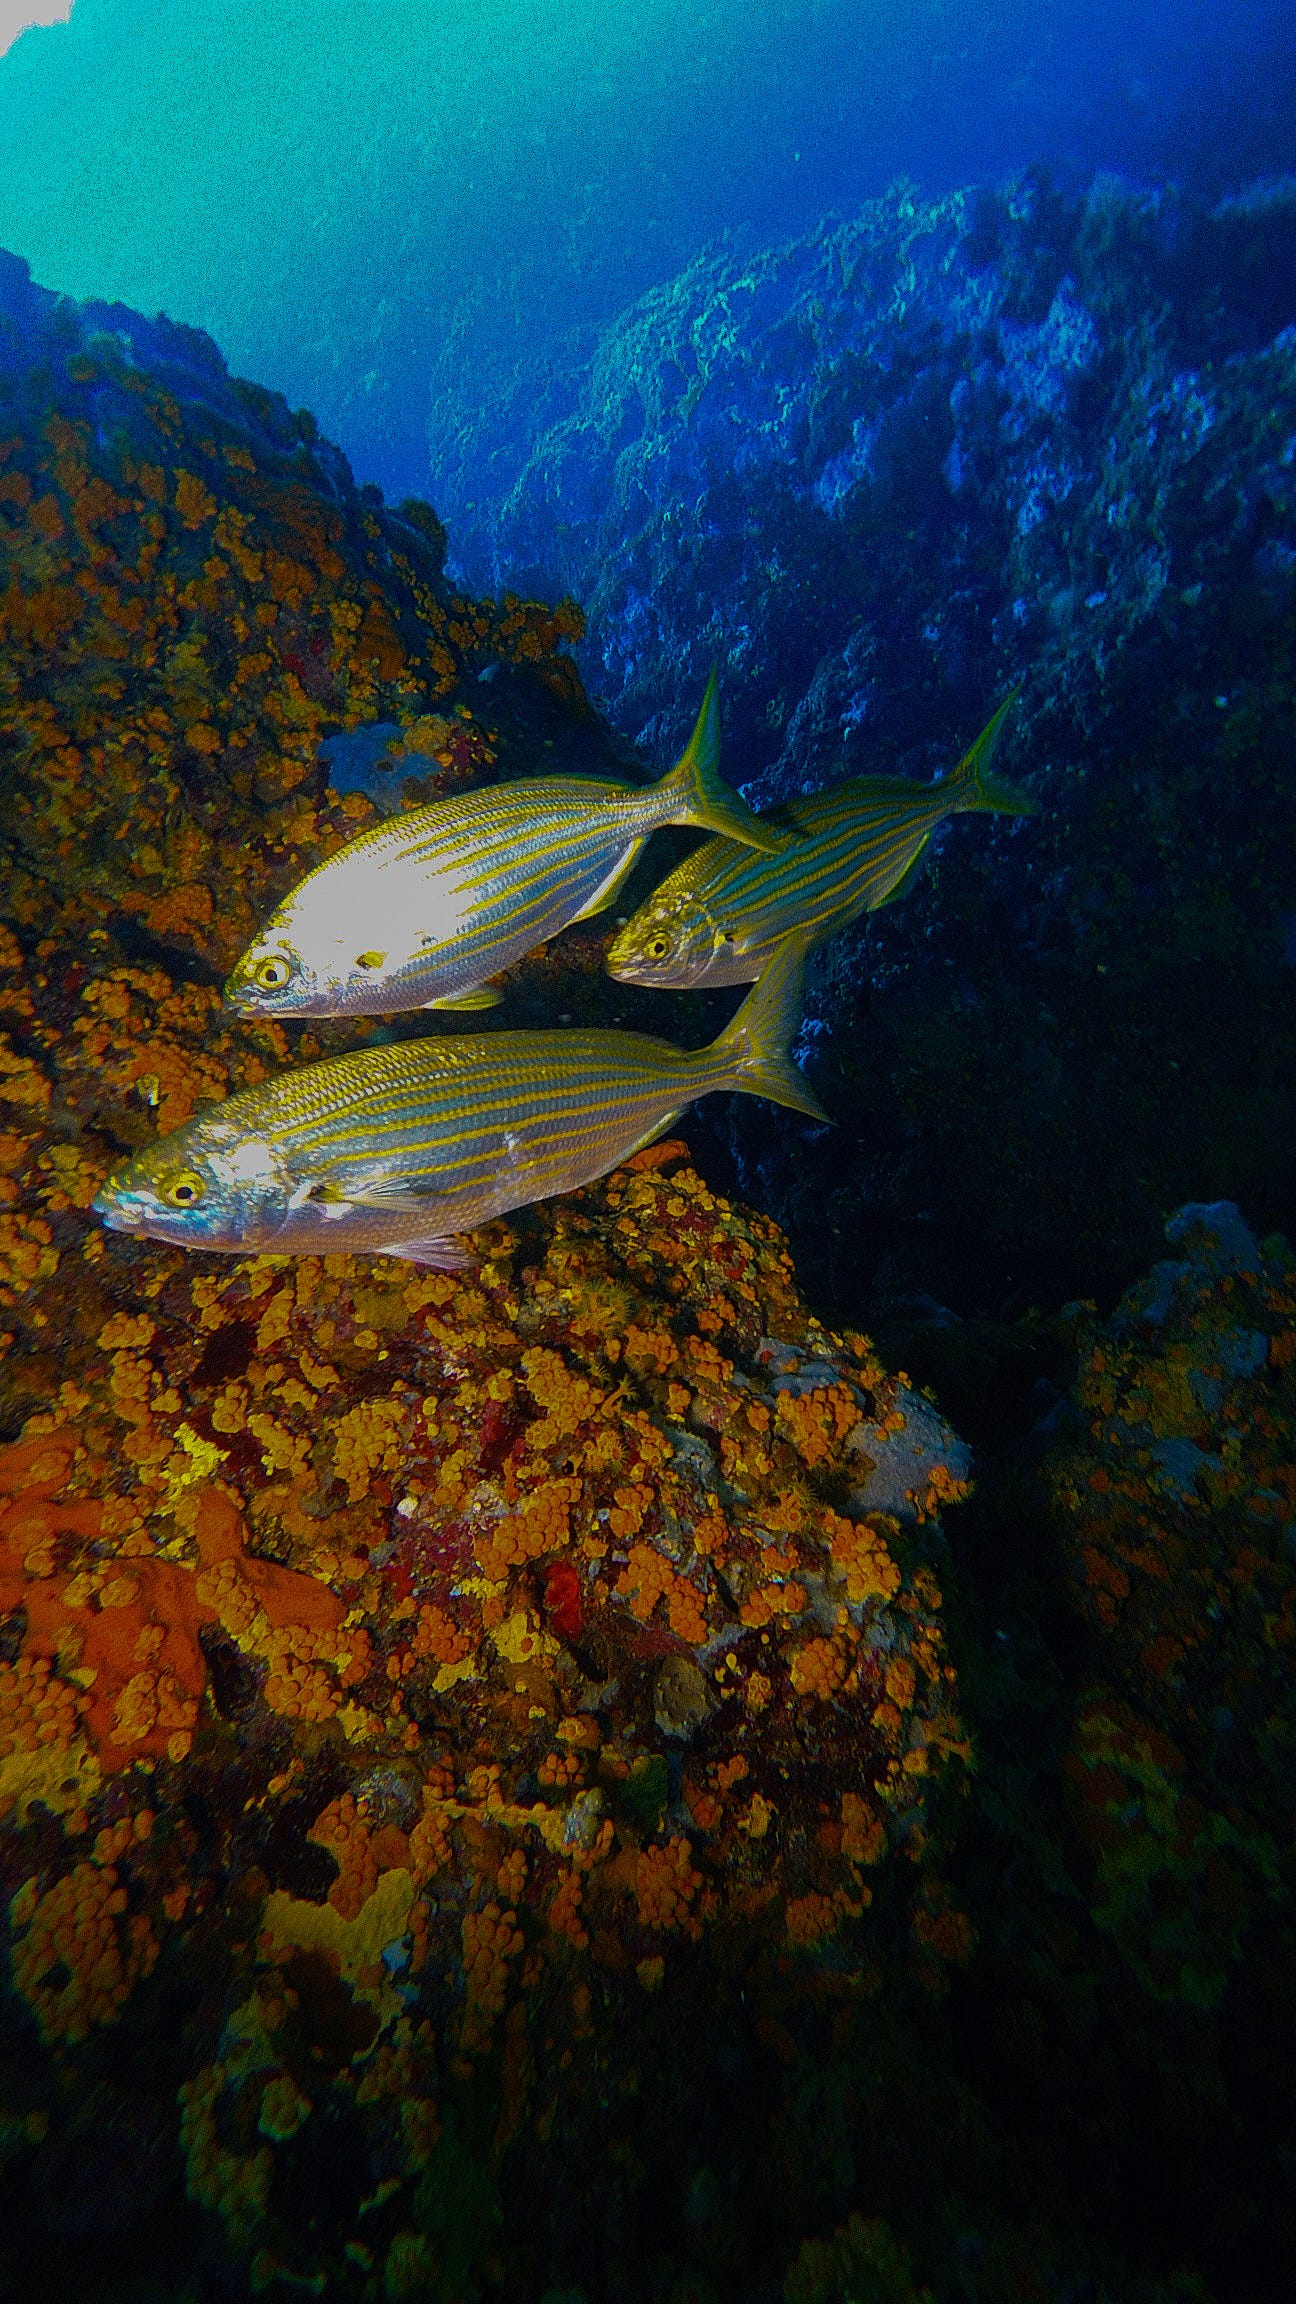 Mediterranean sea fish with seagrass underwater - WildAid